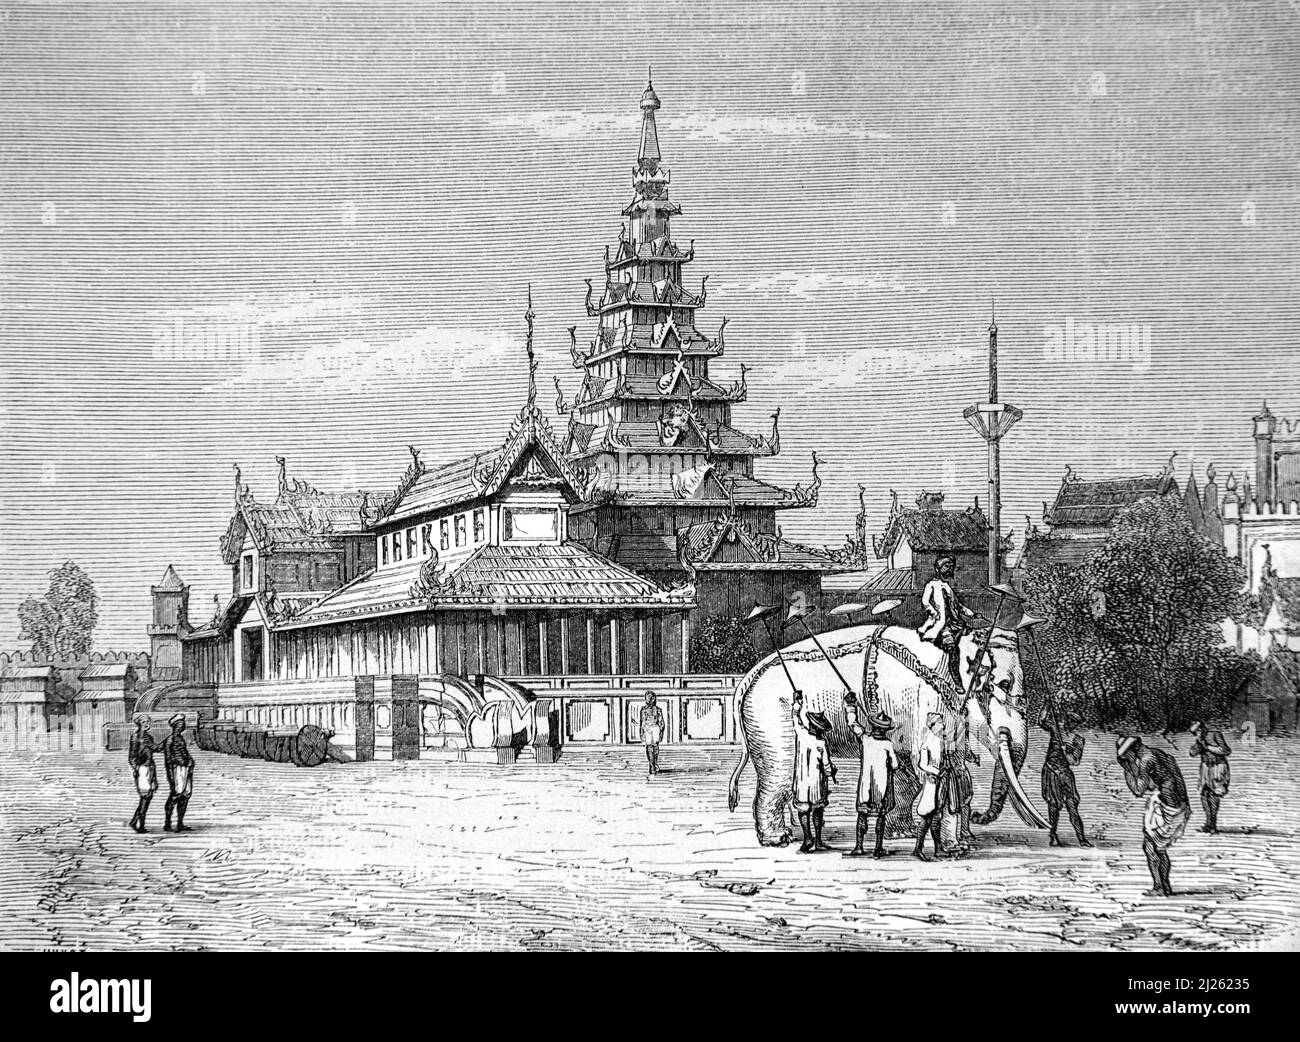 Weißer Elefant oder heiliger Elefant im Königspalast von burmesischen König Bodawpaya, Amarapura, alias Ummerapoora, Mandalay, Burma oder Myanmar. Vintage Illustration oder Gravur 1860. Stockfoto